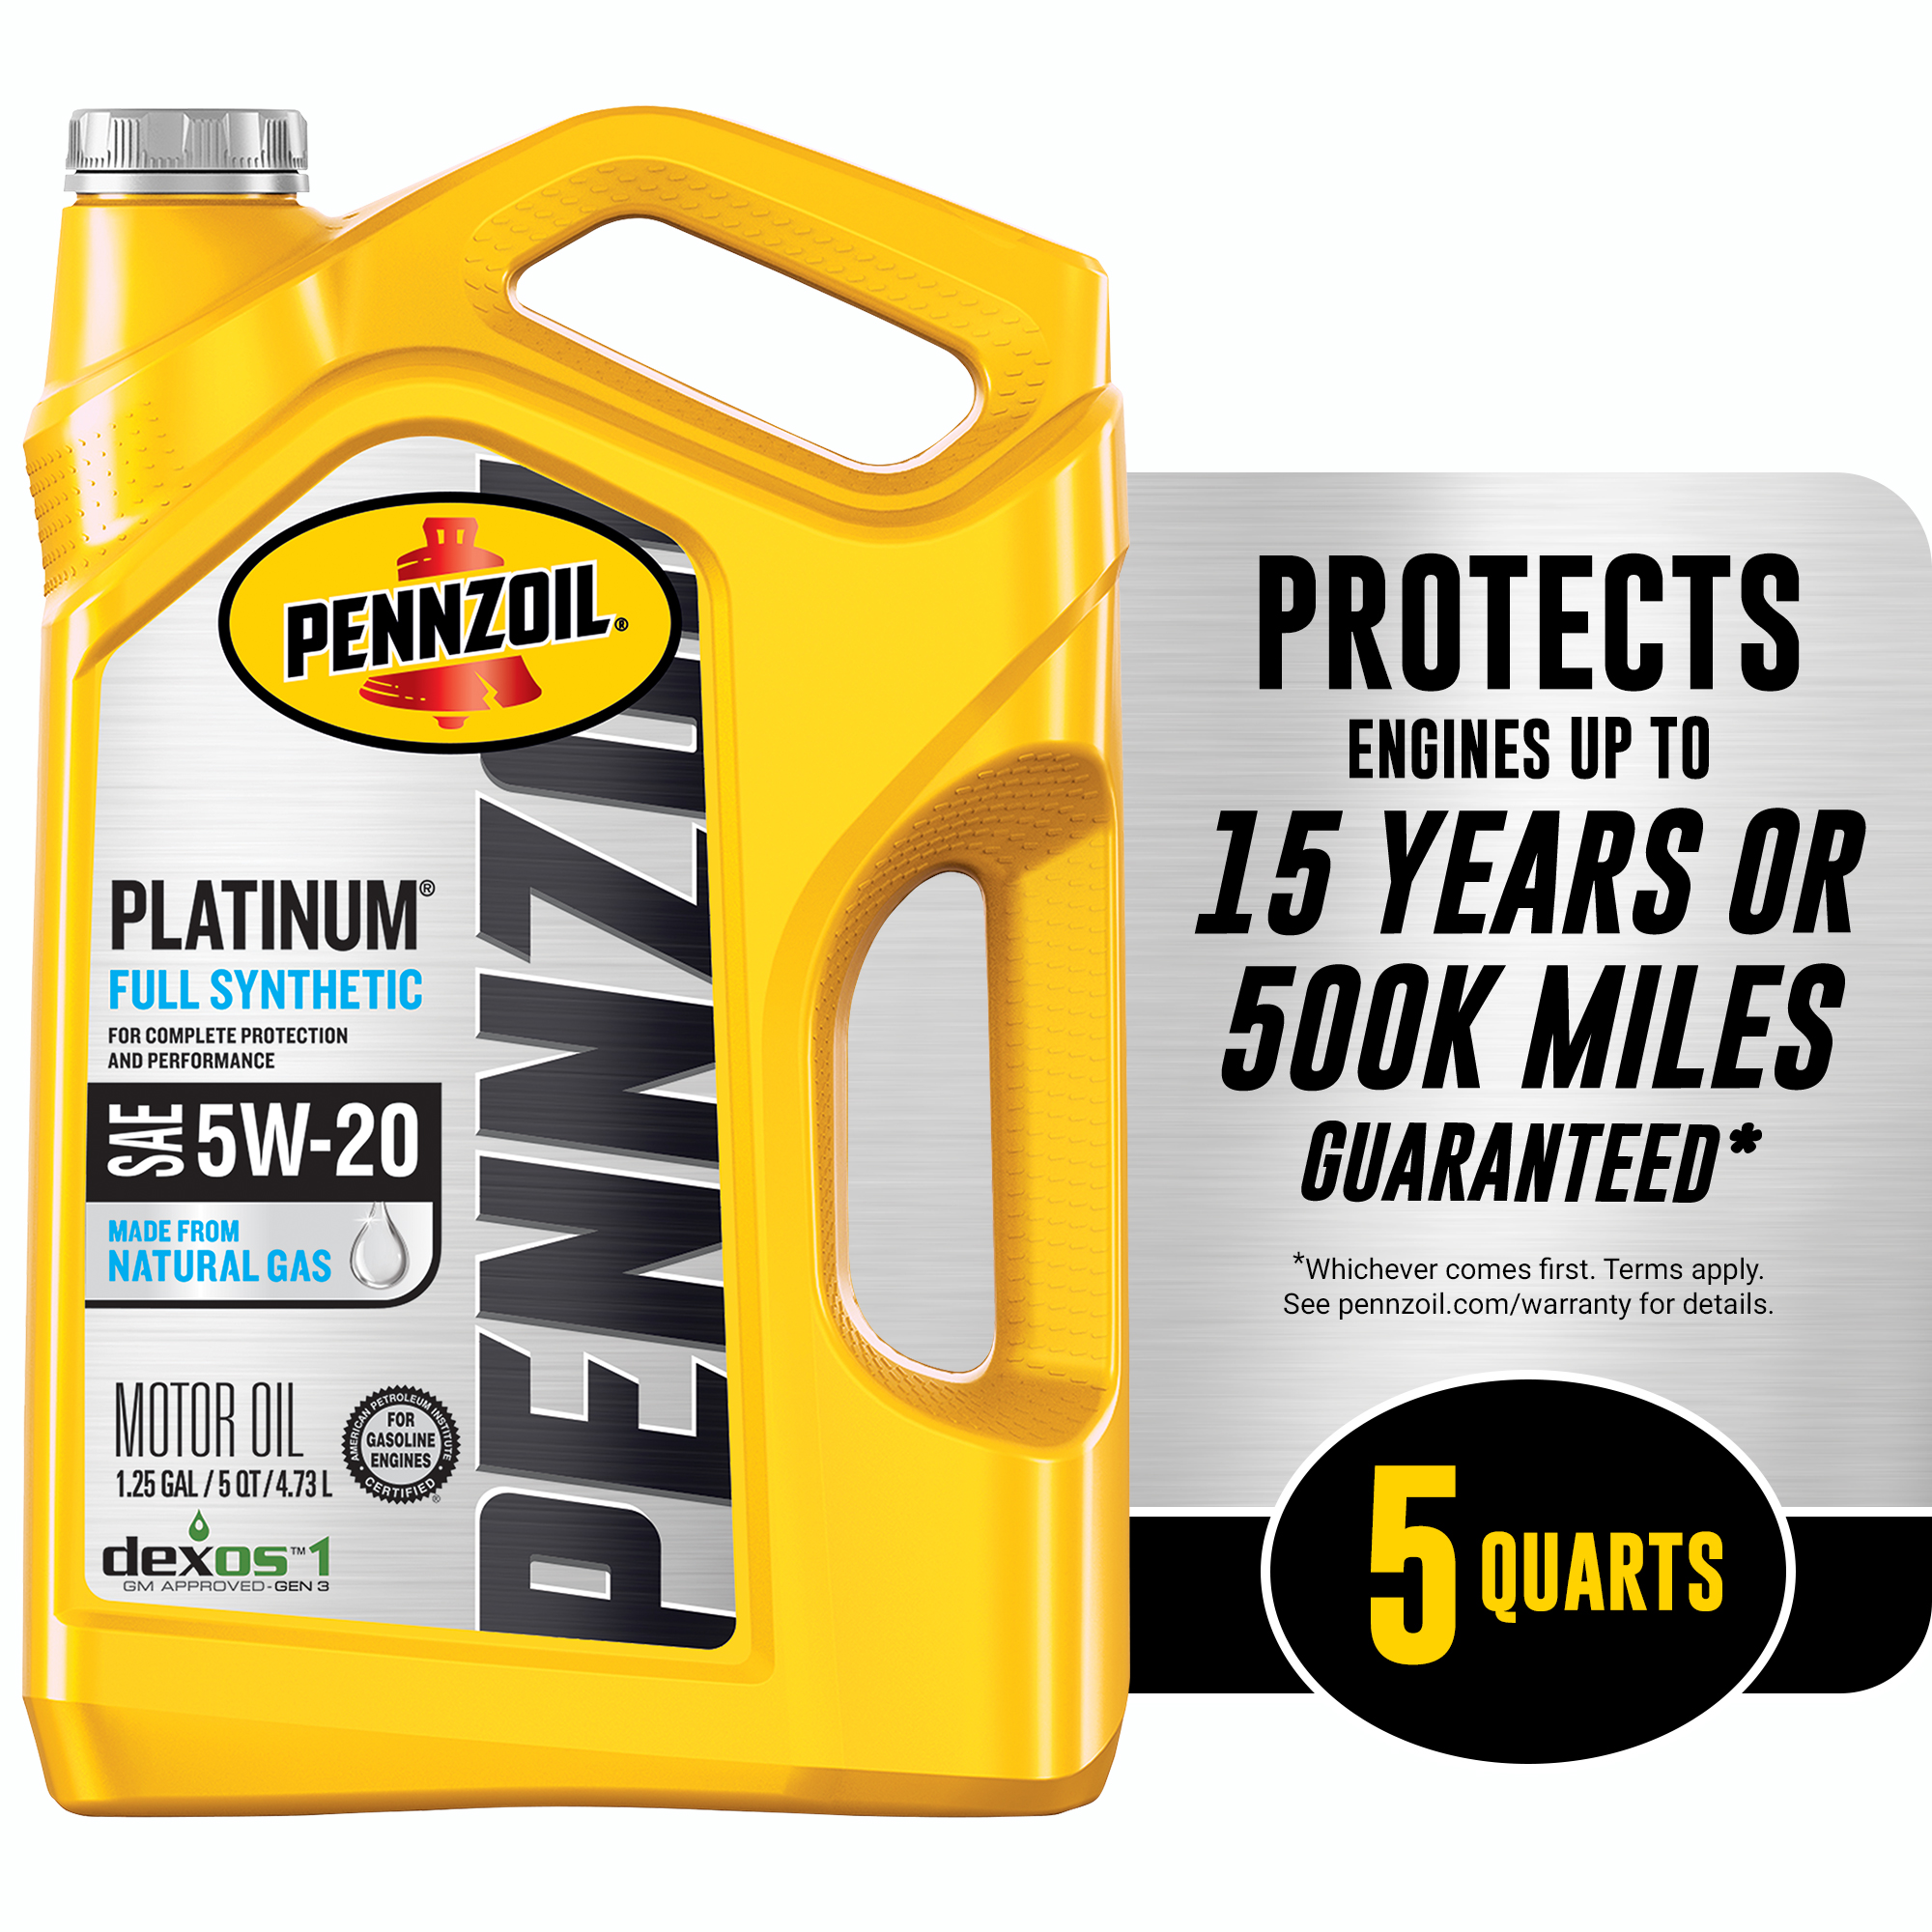 Pennzoil Platinum Full Synthetic 5W-20 Motor Oil, 5-Quart - image 1 of 8